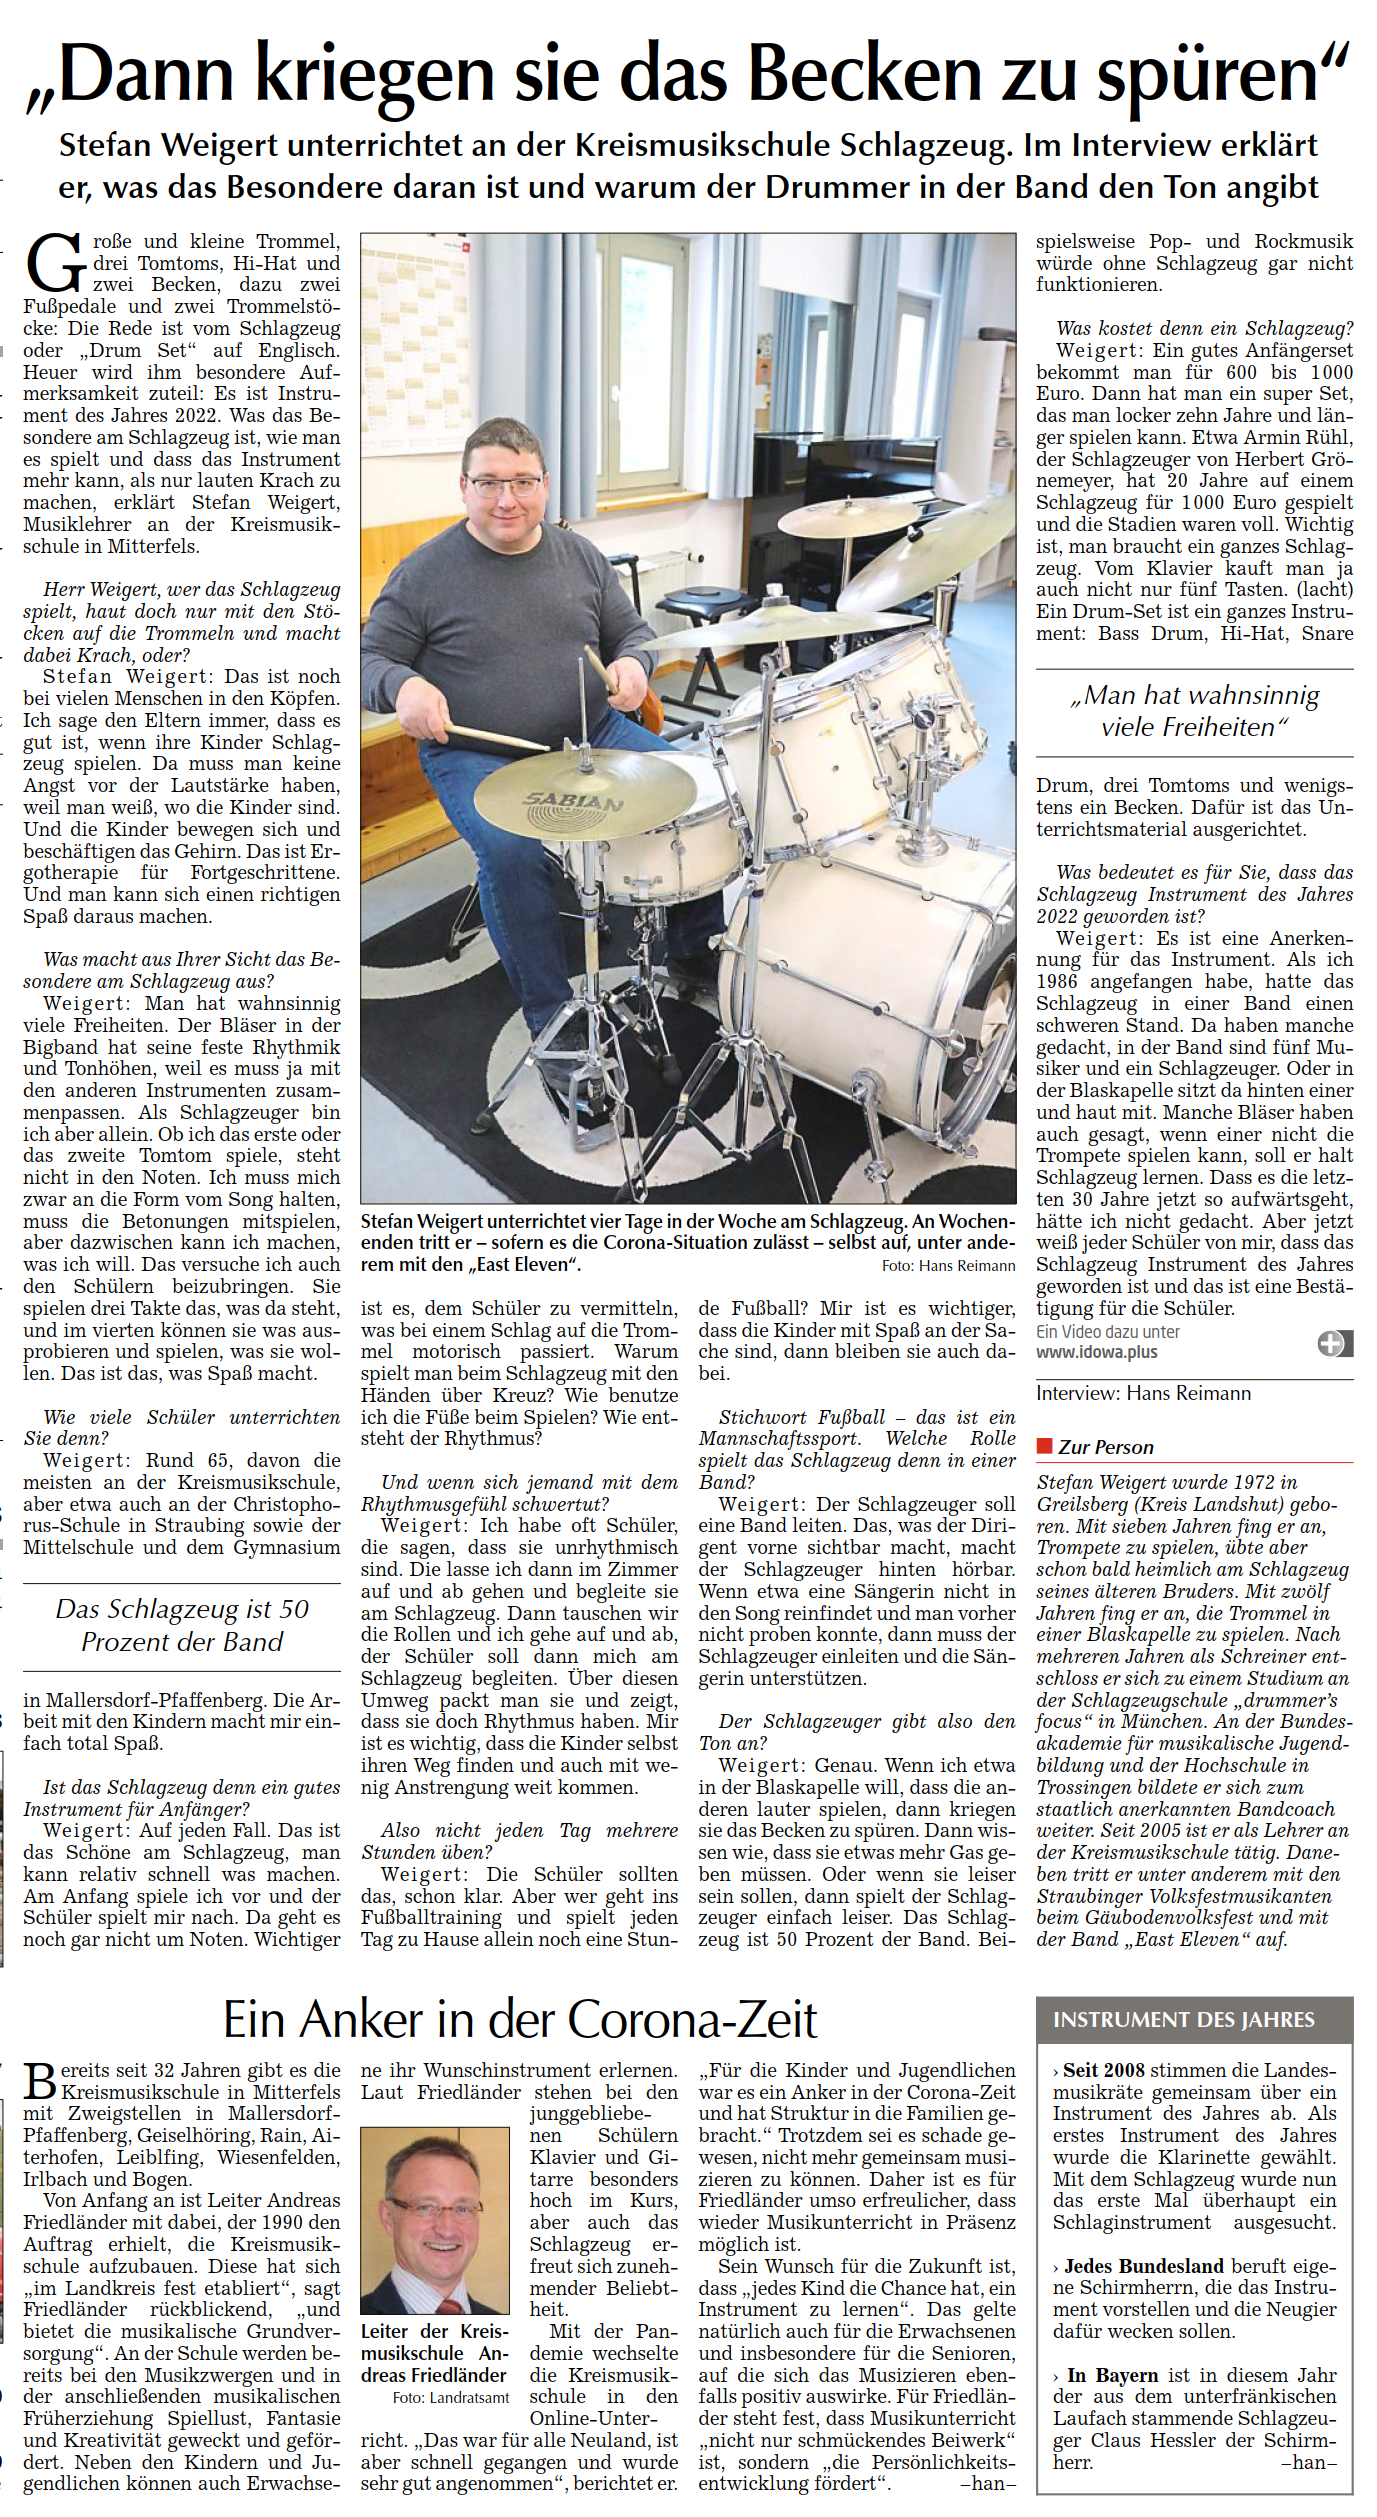 Bild zu Stefan Weigert unterrichtet an der Kreismusikschule Schlagzeug, Straubinger Tagblatt 15.02.2022